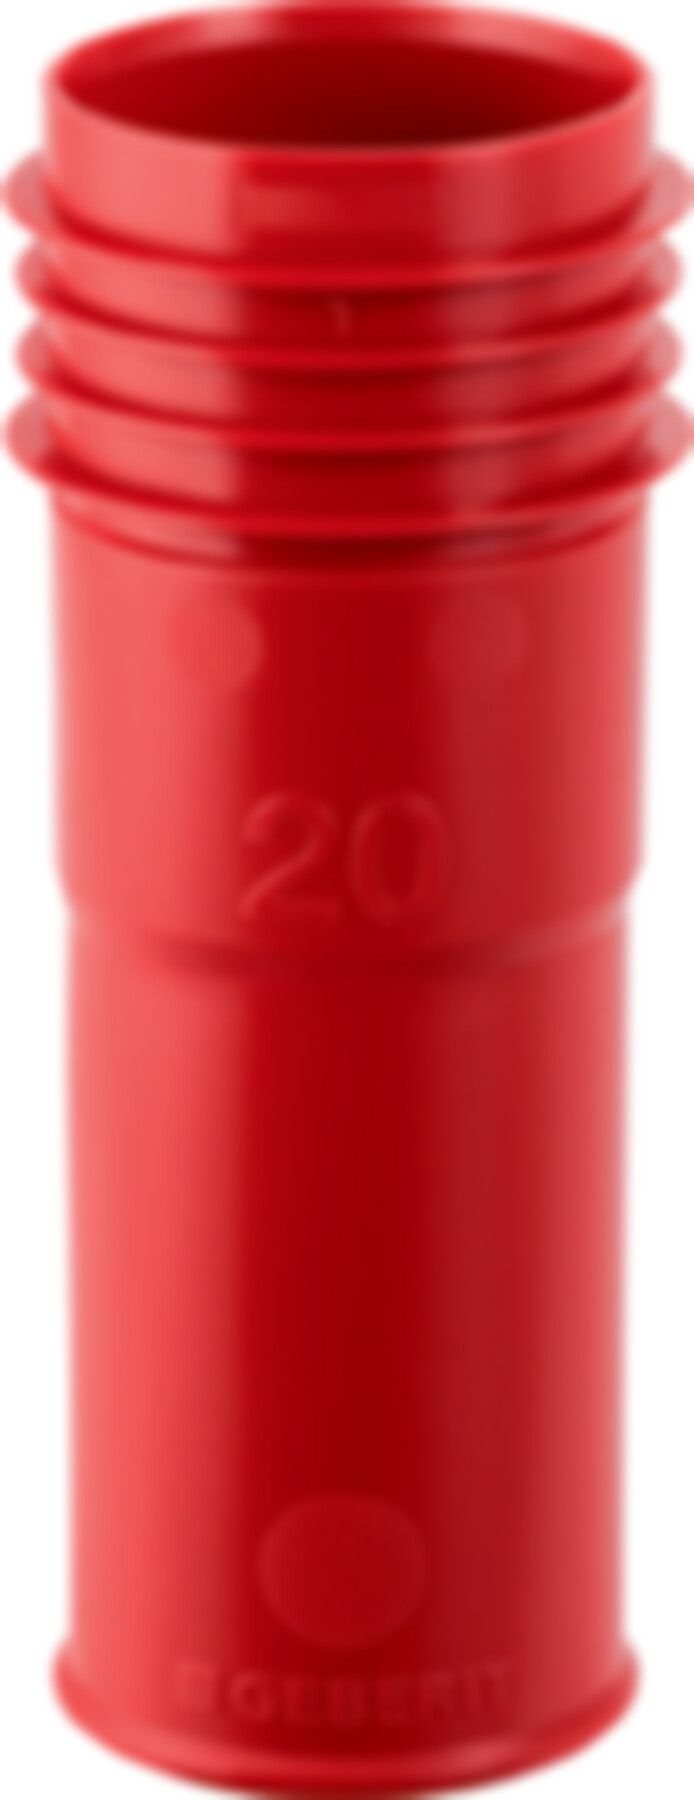 Markierhülse für Schutzrohr 20mm rot 651.023.00.1 - Geberit-Push Fit-Formstücke